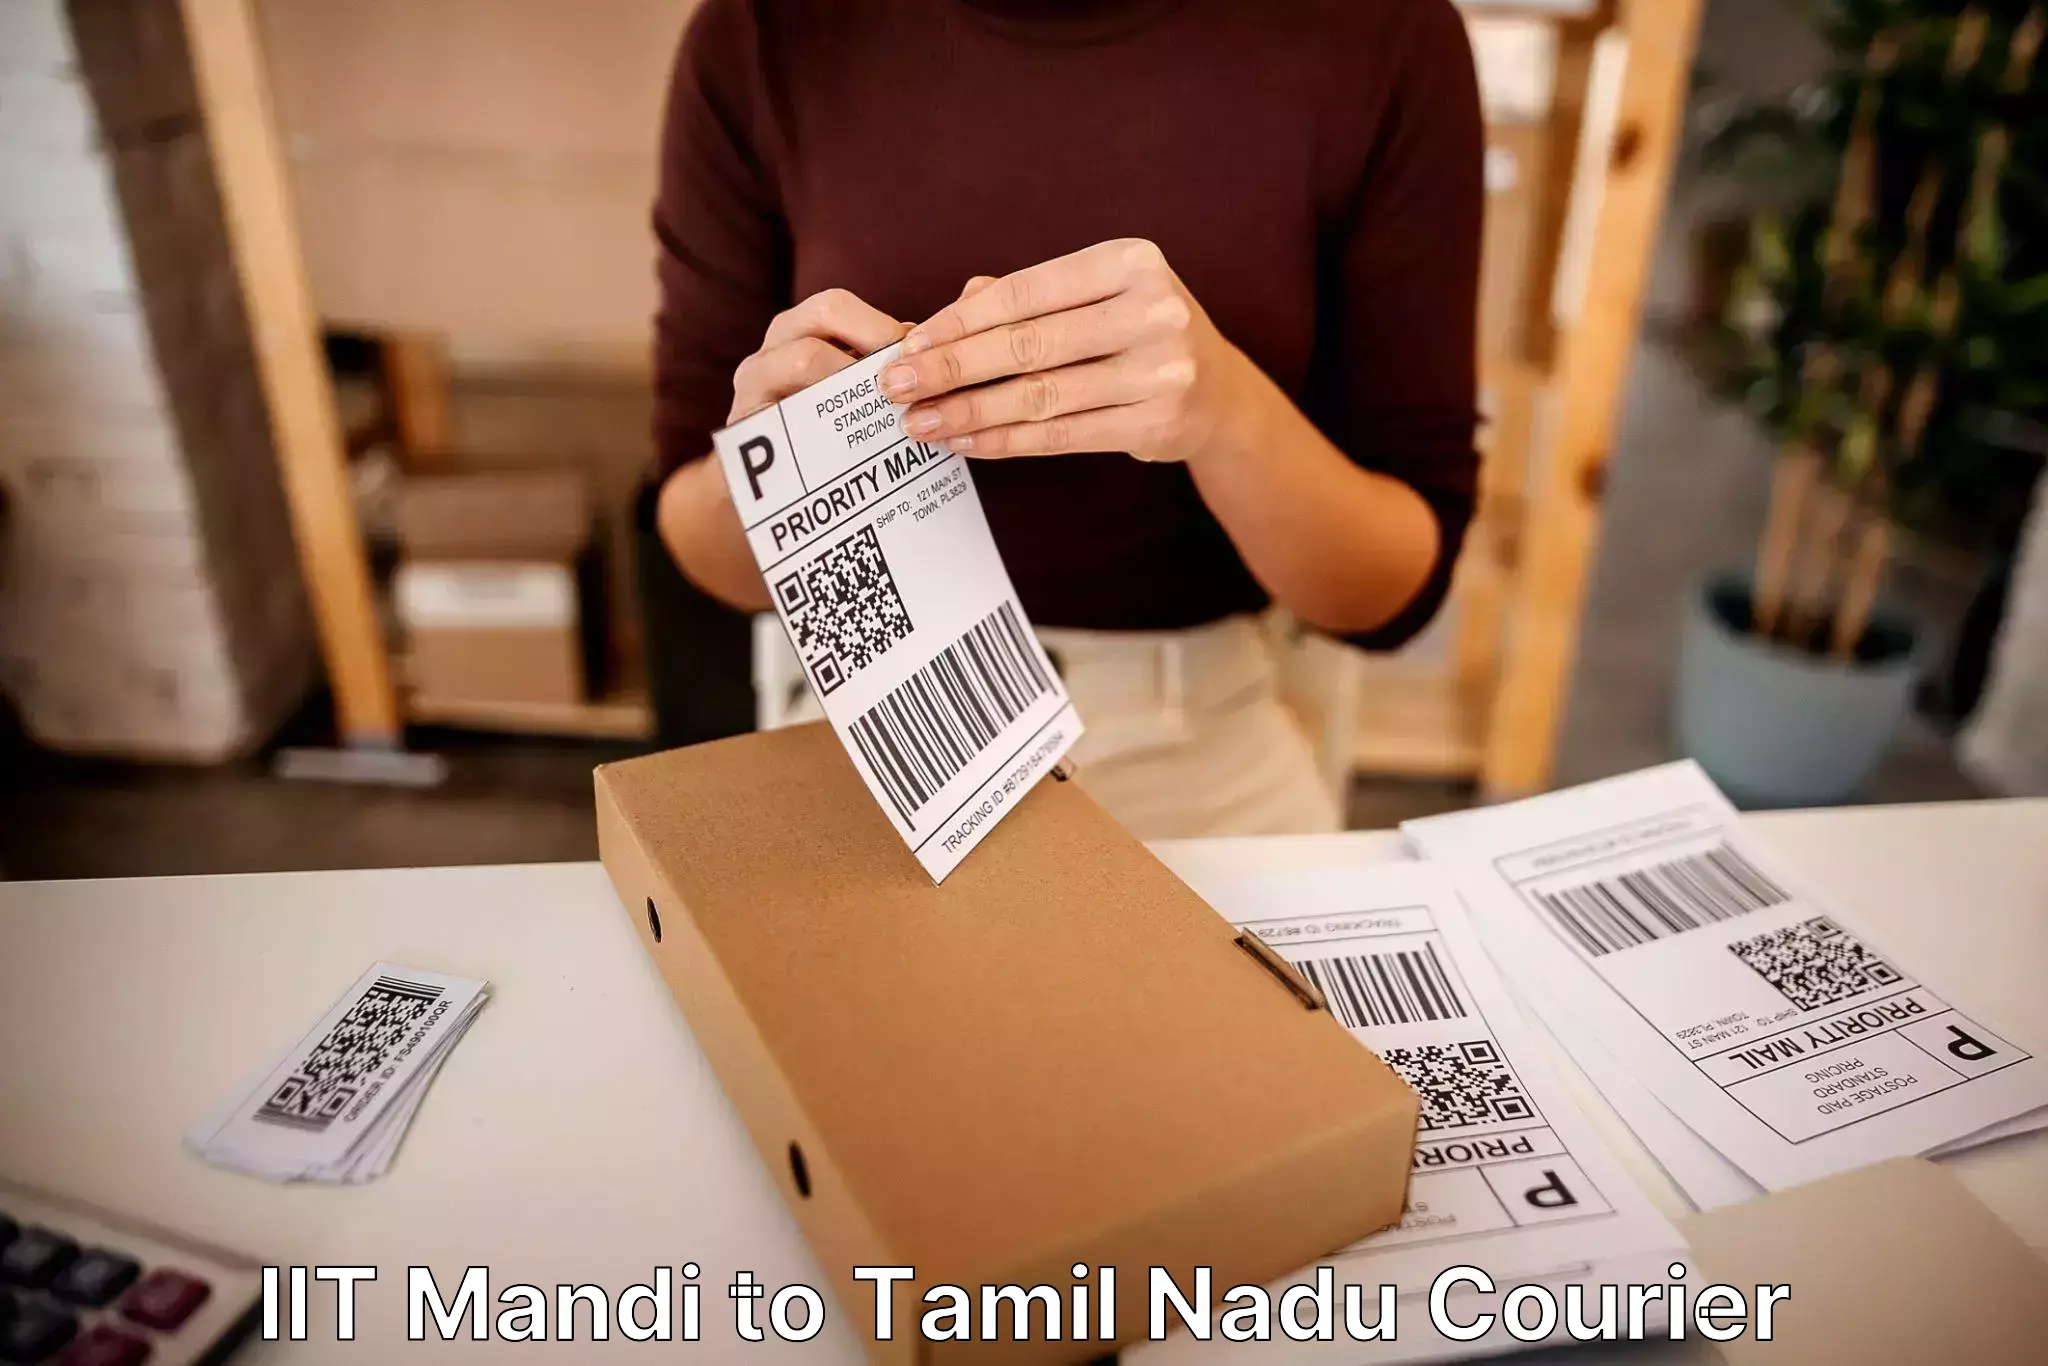 Custom moving solutions IIT Mandi to Thiruthuraipoondi